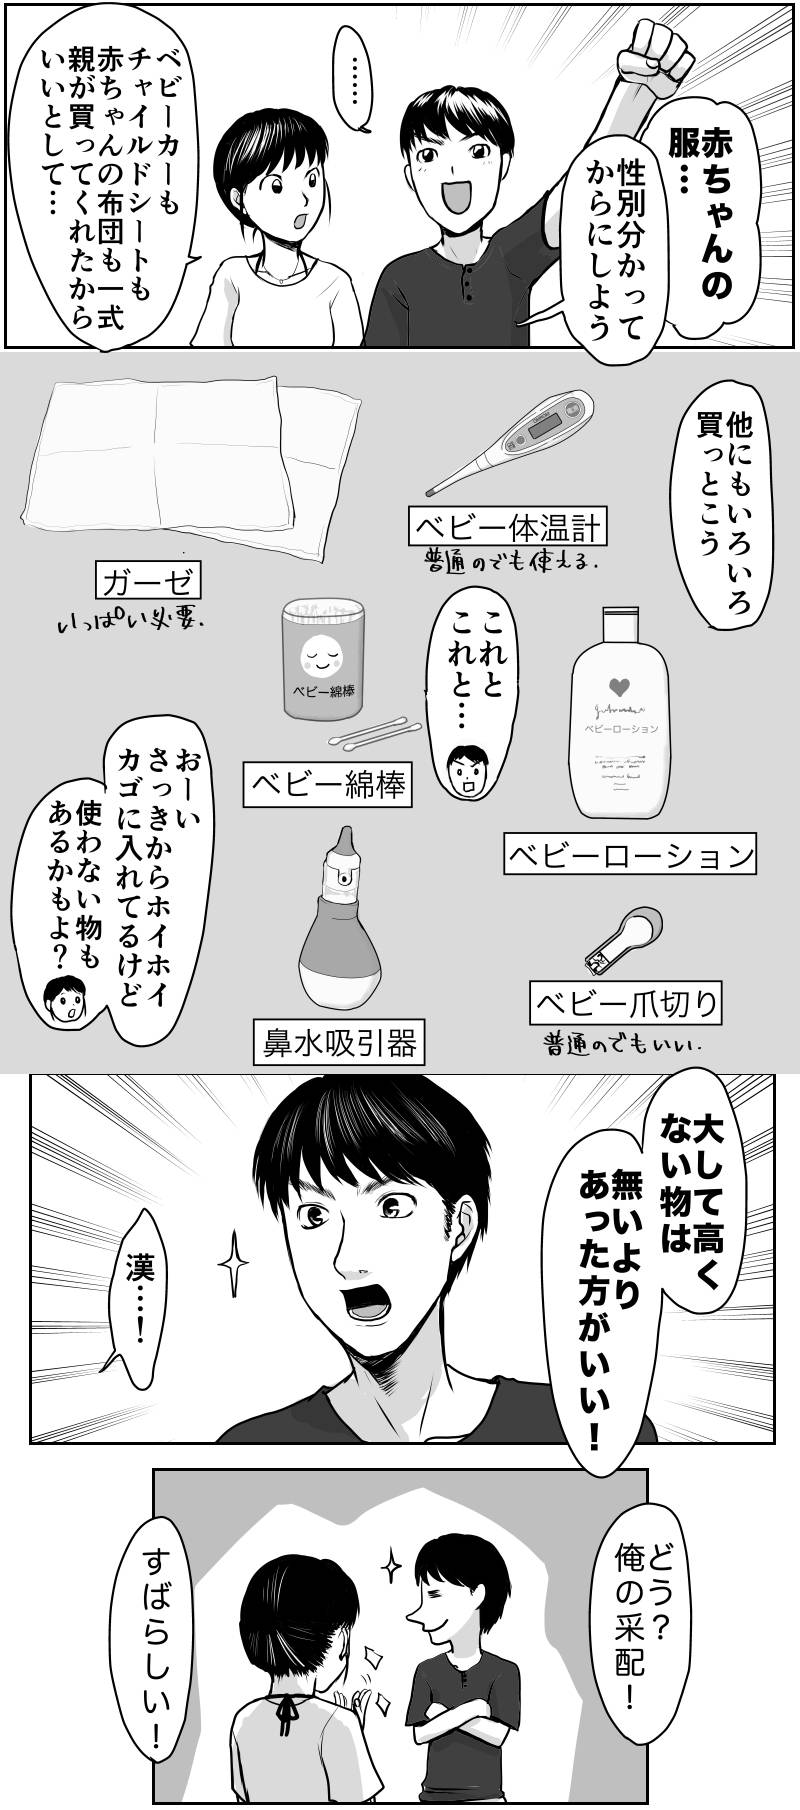 久永家〜妊娠出産がわかるエッセイ漫画〜 第21話